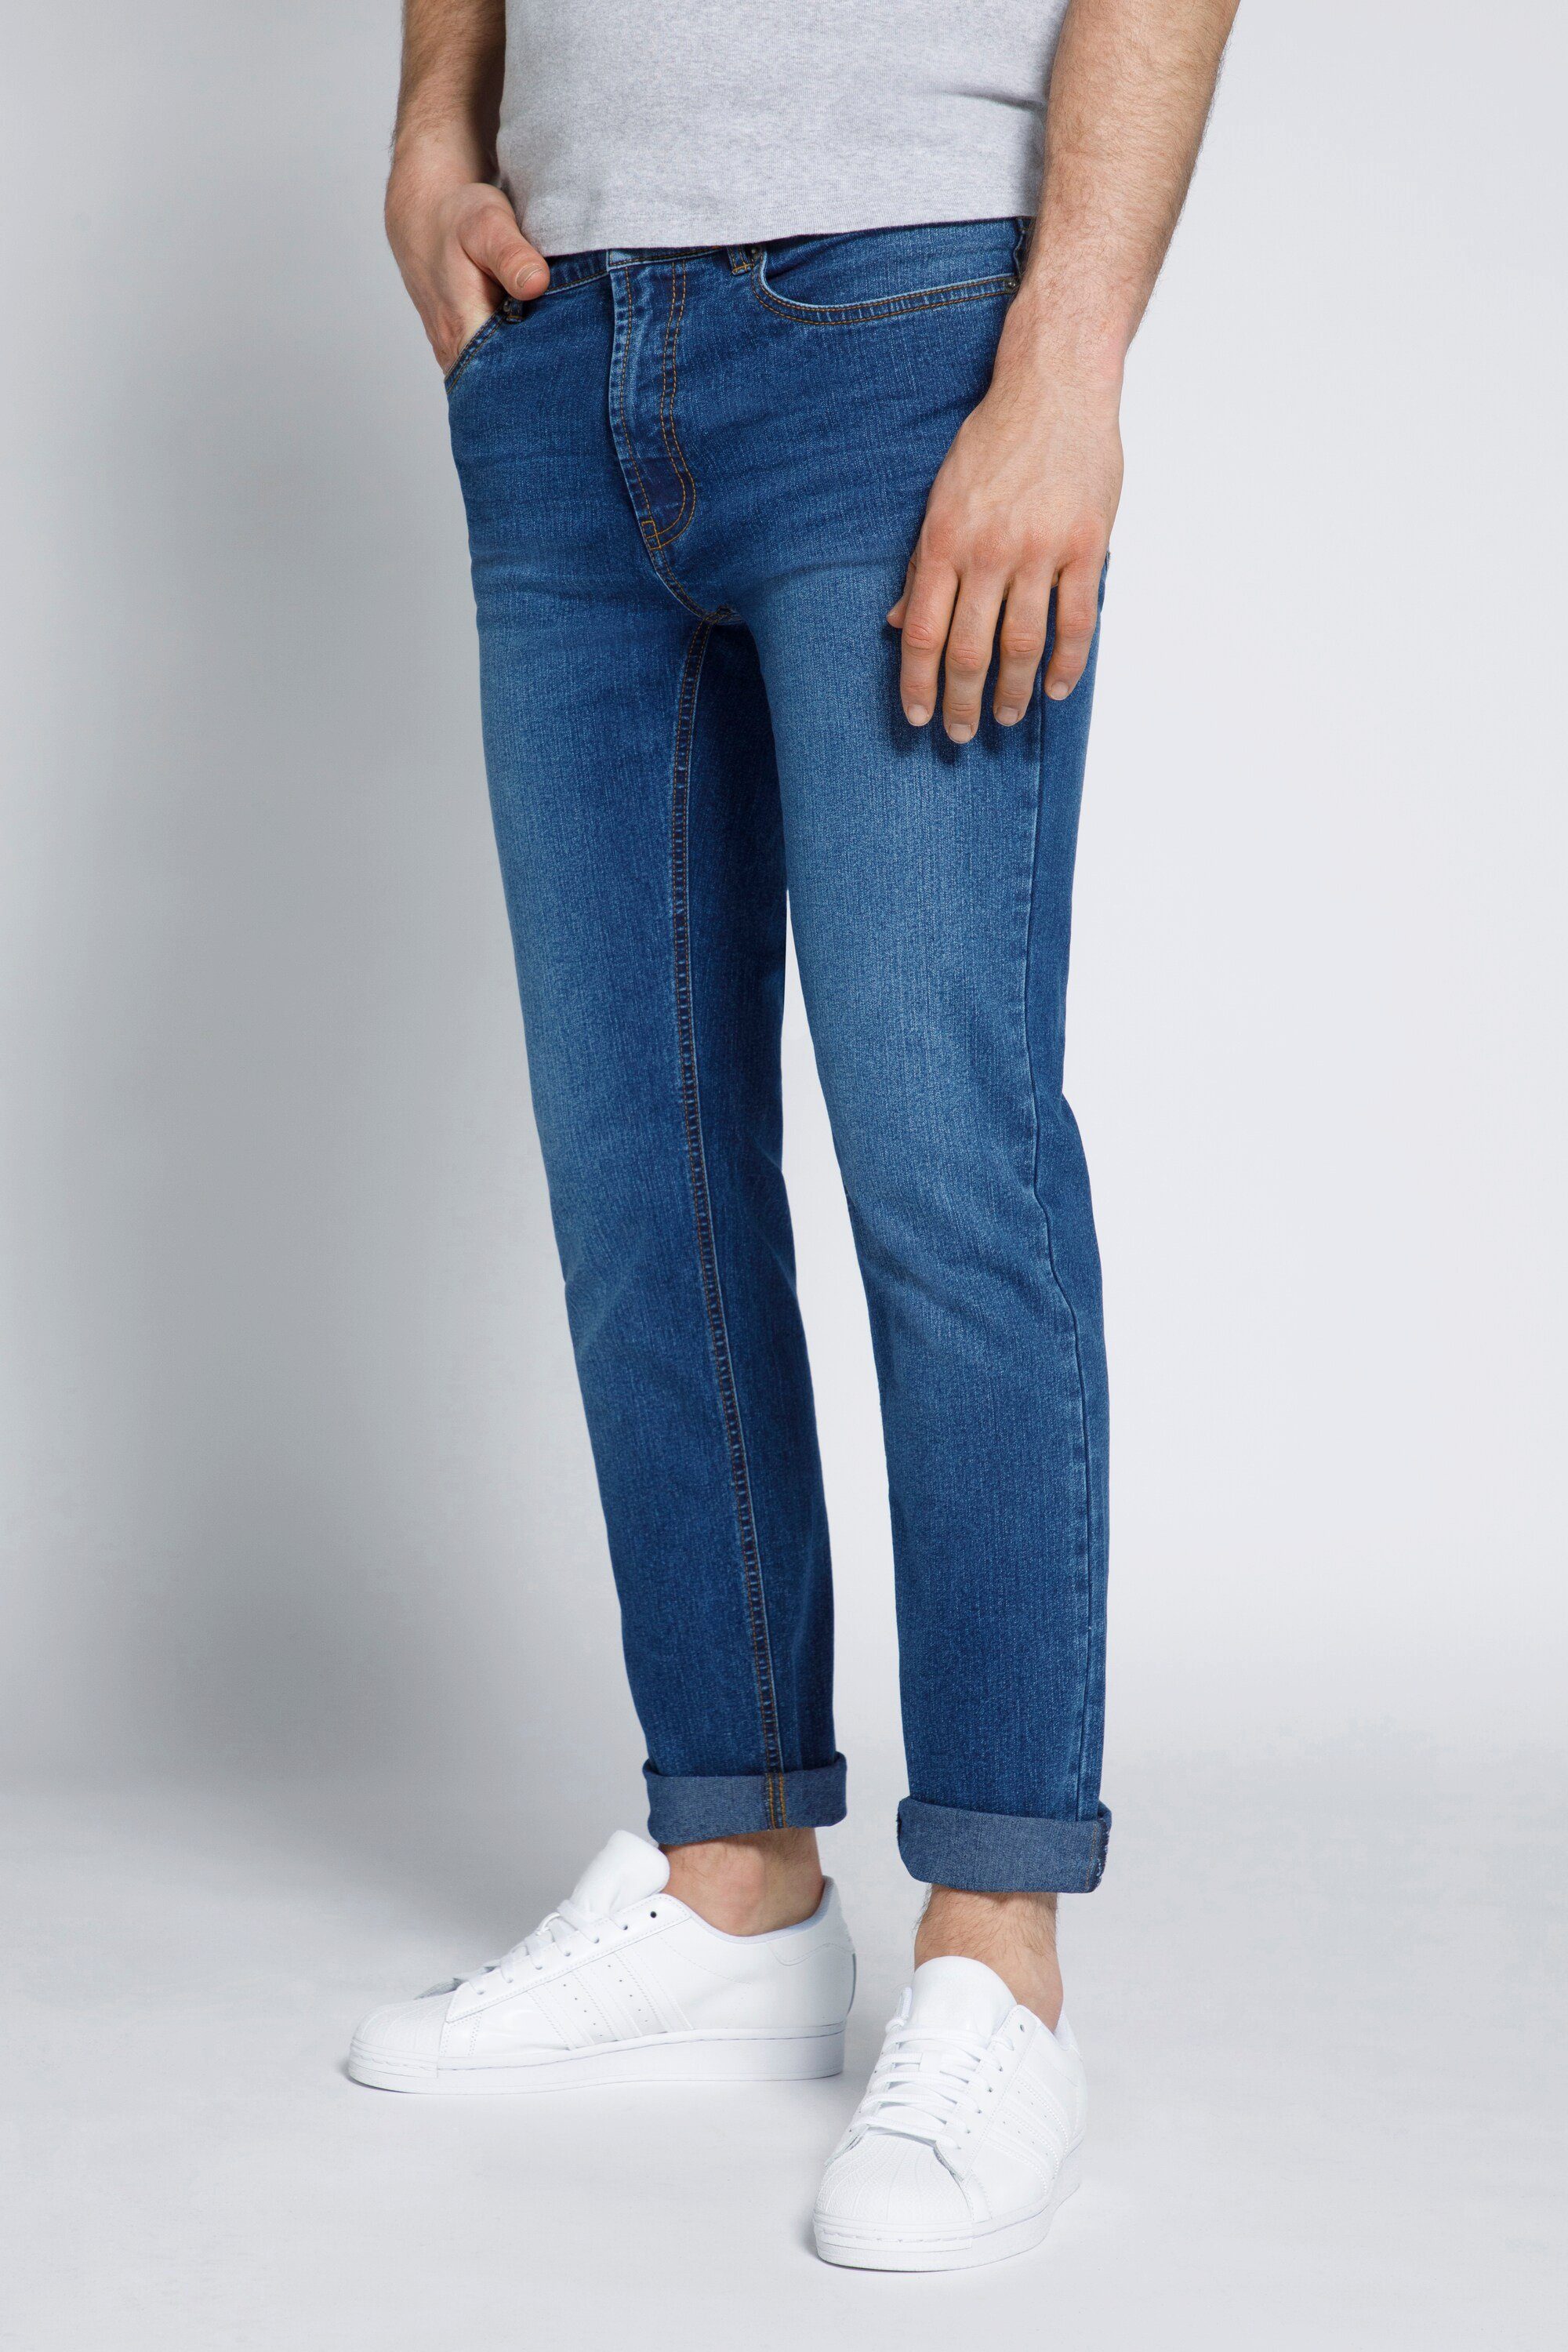 STHUGE 5-Pocket-Jeans STHUGE Herren Jeans Modern Fit blue denim | Jeans